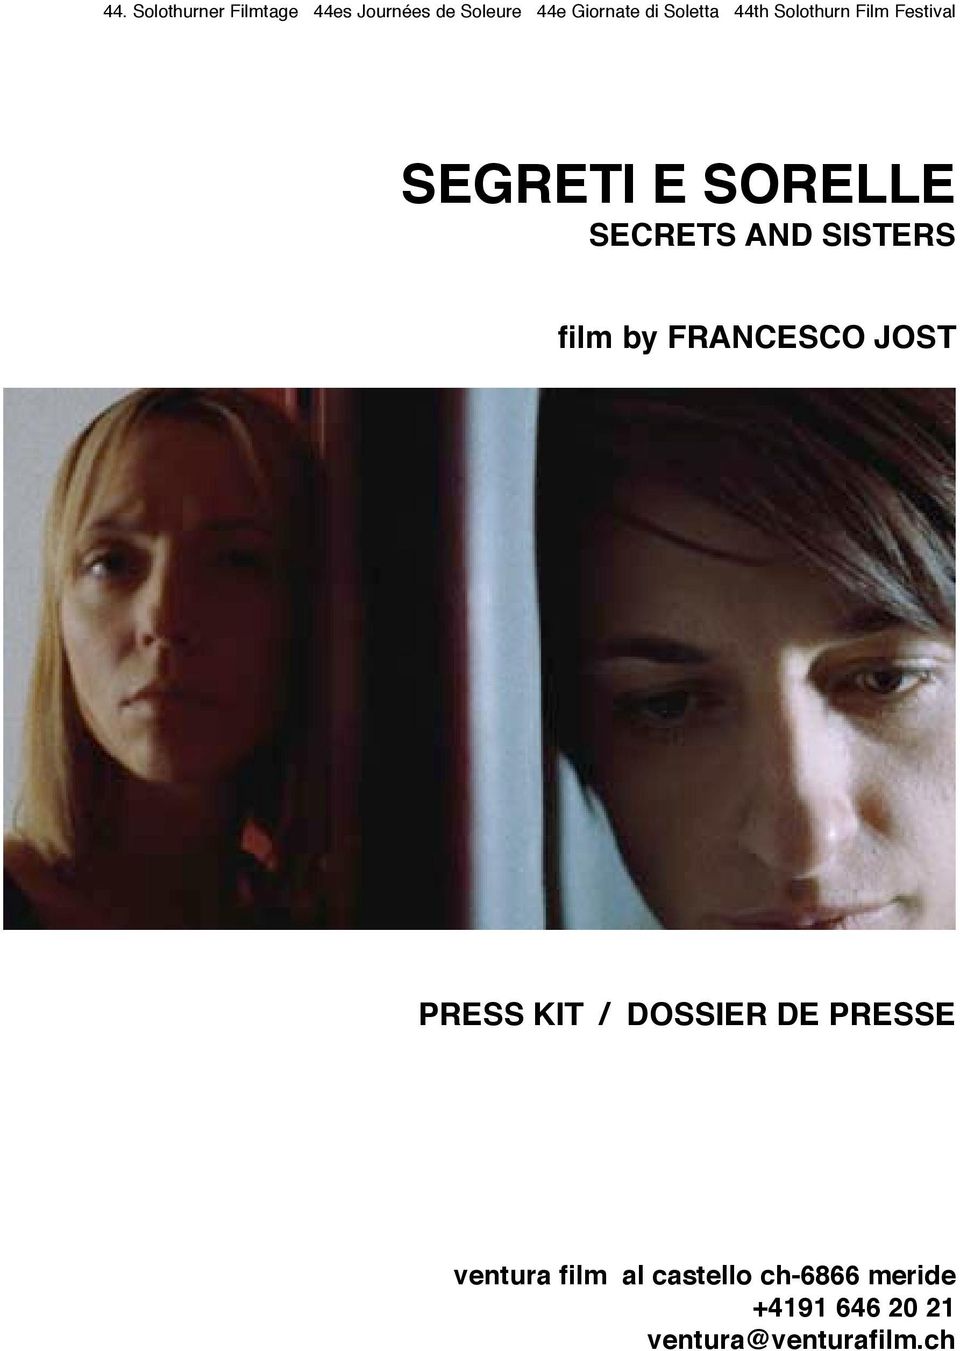 SISTERS film by FRANCESCO JOST PRESS KIT / DOSSIER DE PRESSE